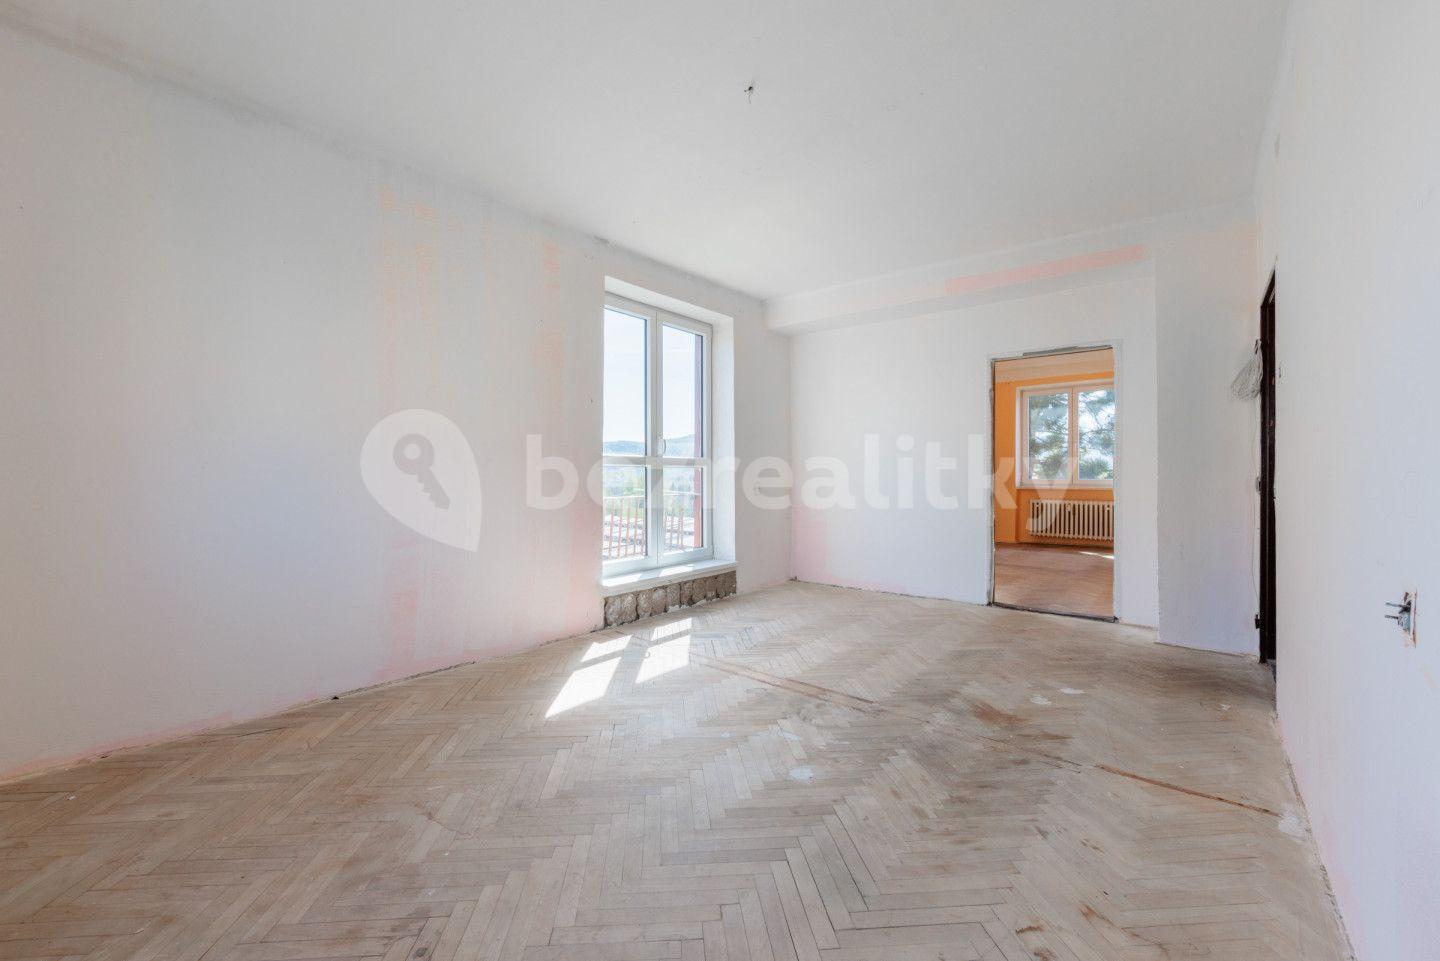 2 bedroom flat for sale, 53 m², Hornická, Sokolov, Karlovarský Region